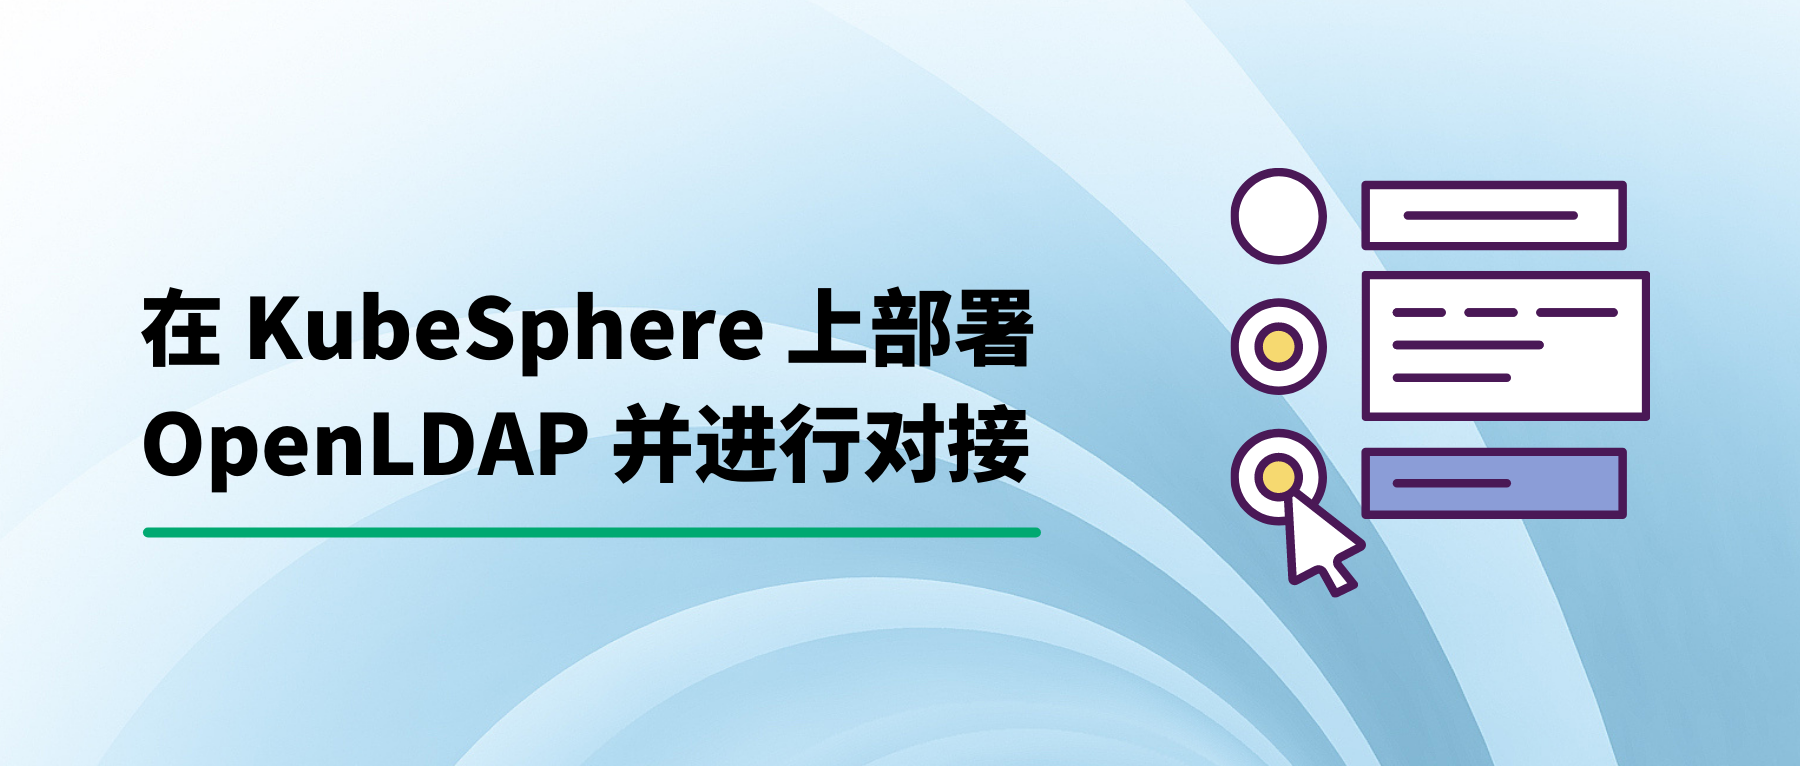 在 KubeSphere 上部署 OpenLDAP 并进行对接使用